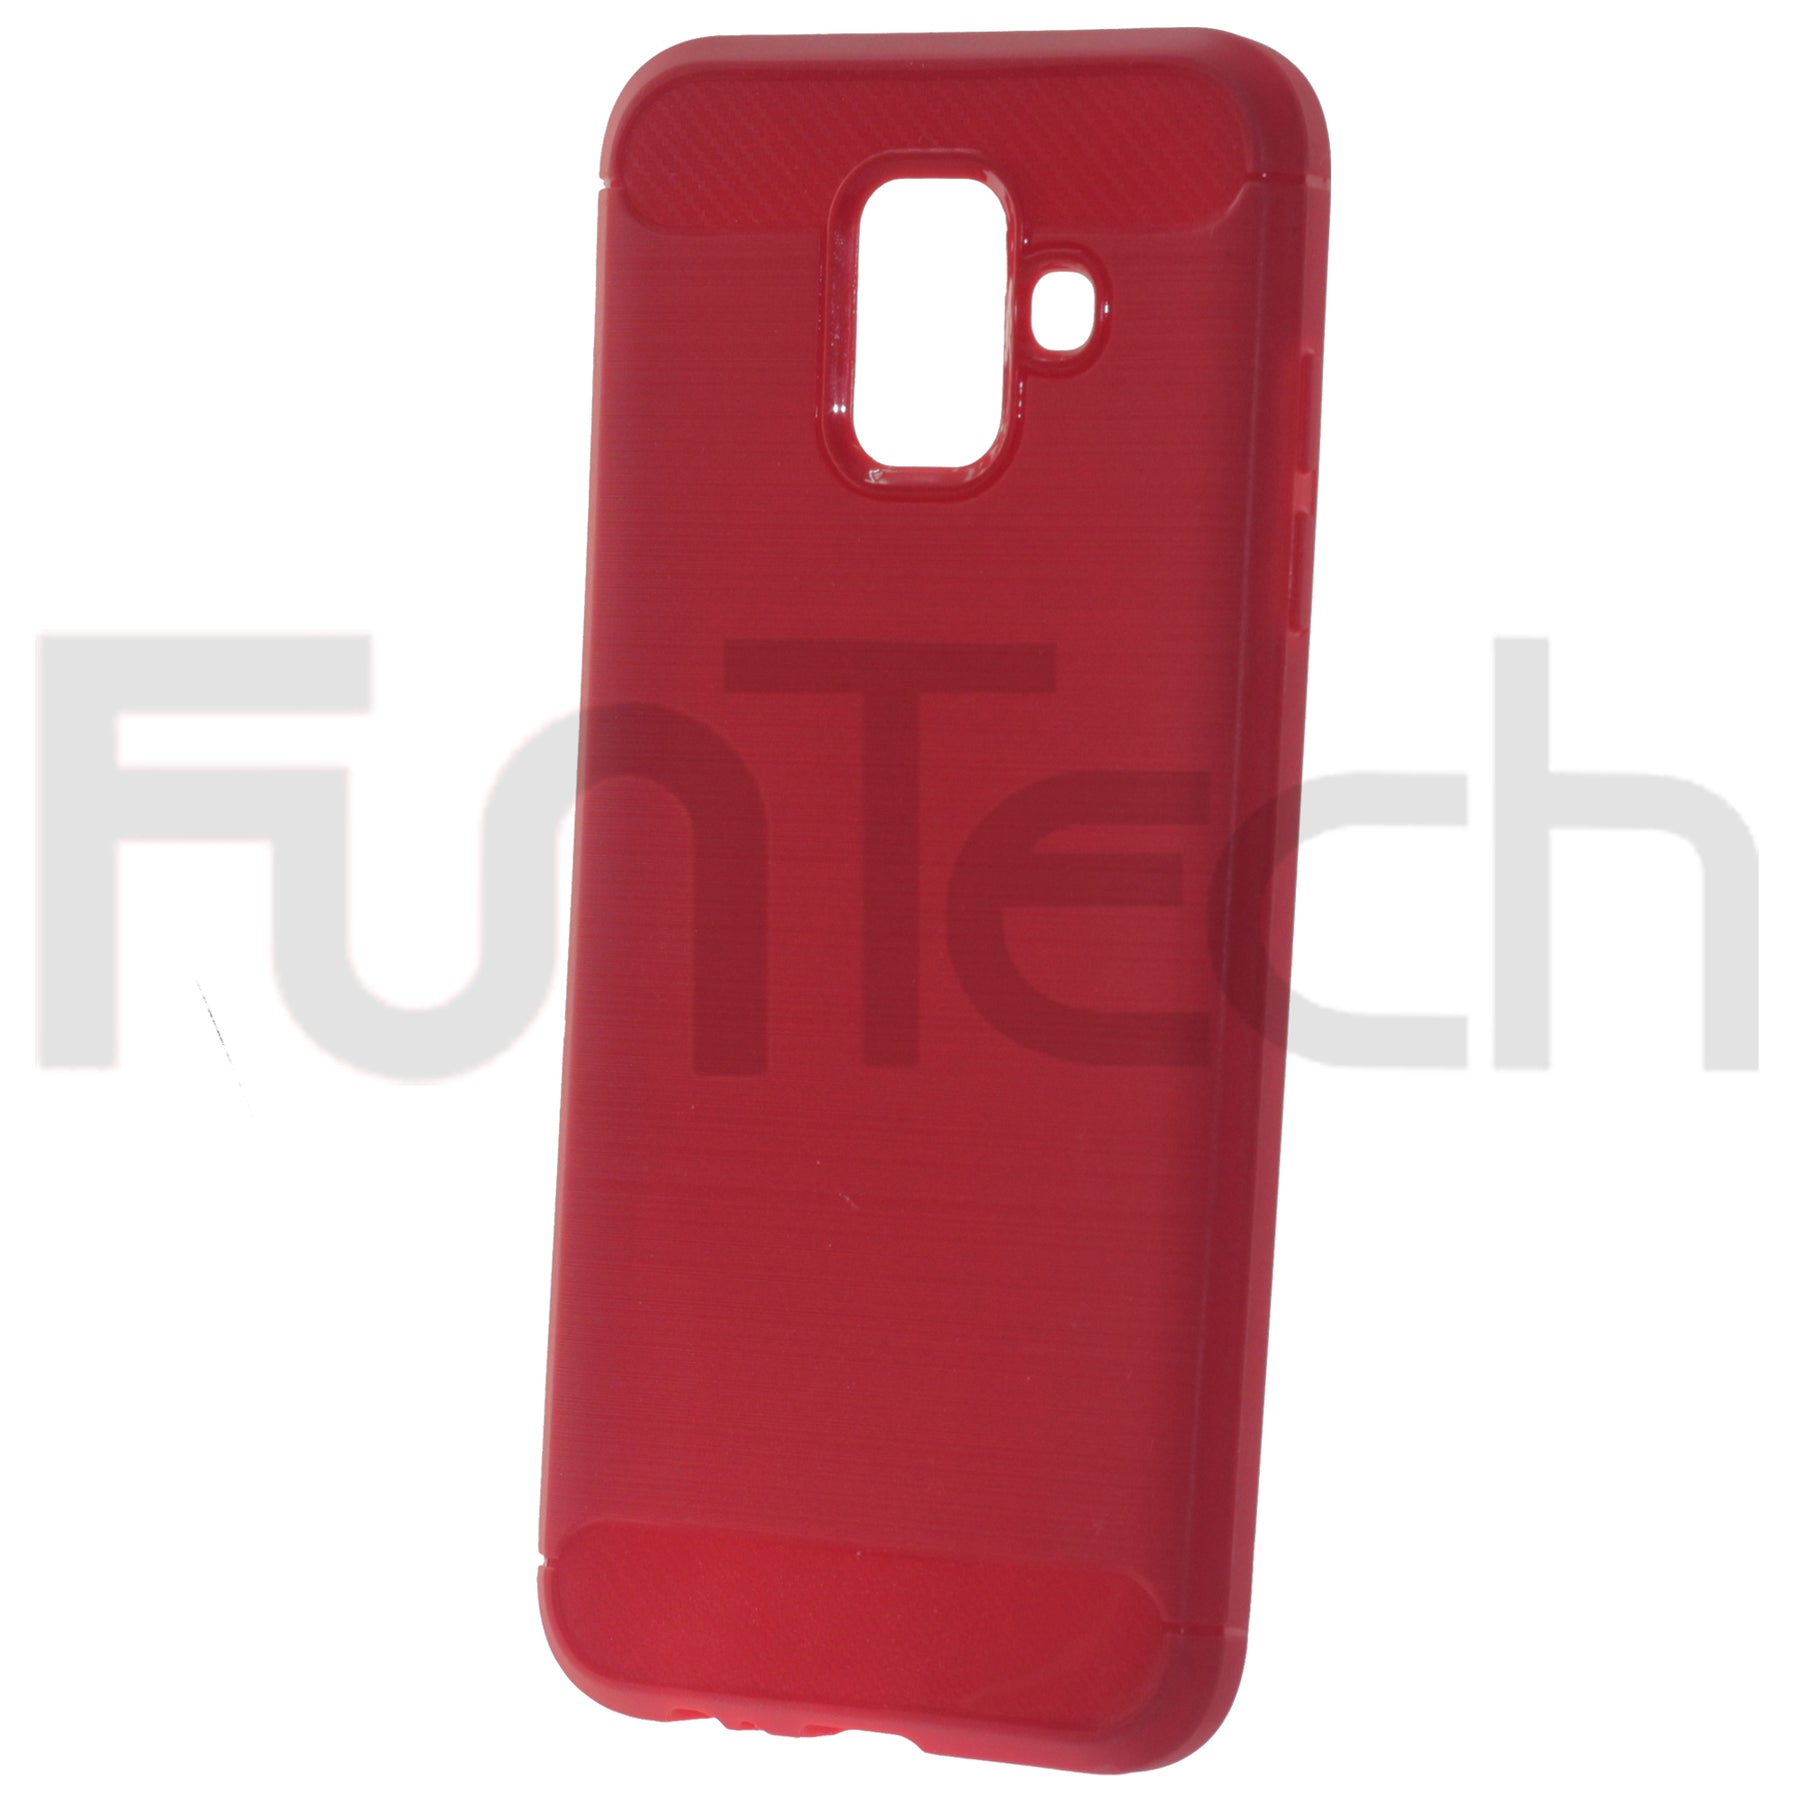 Samsung A6 2018, Matte Gel Case, Color Red.